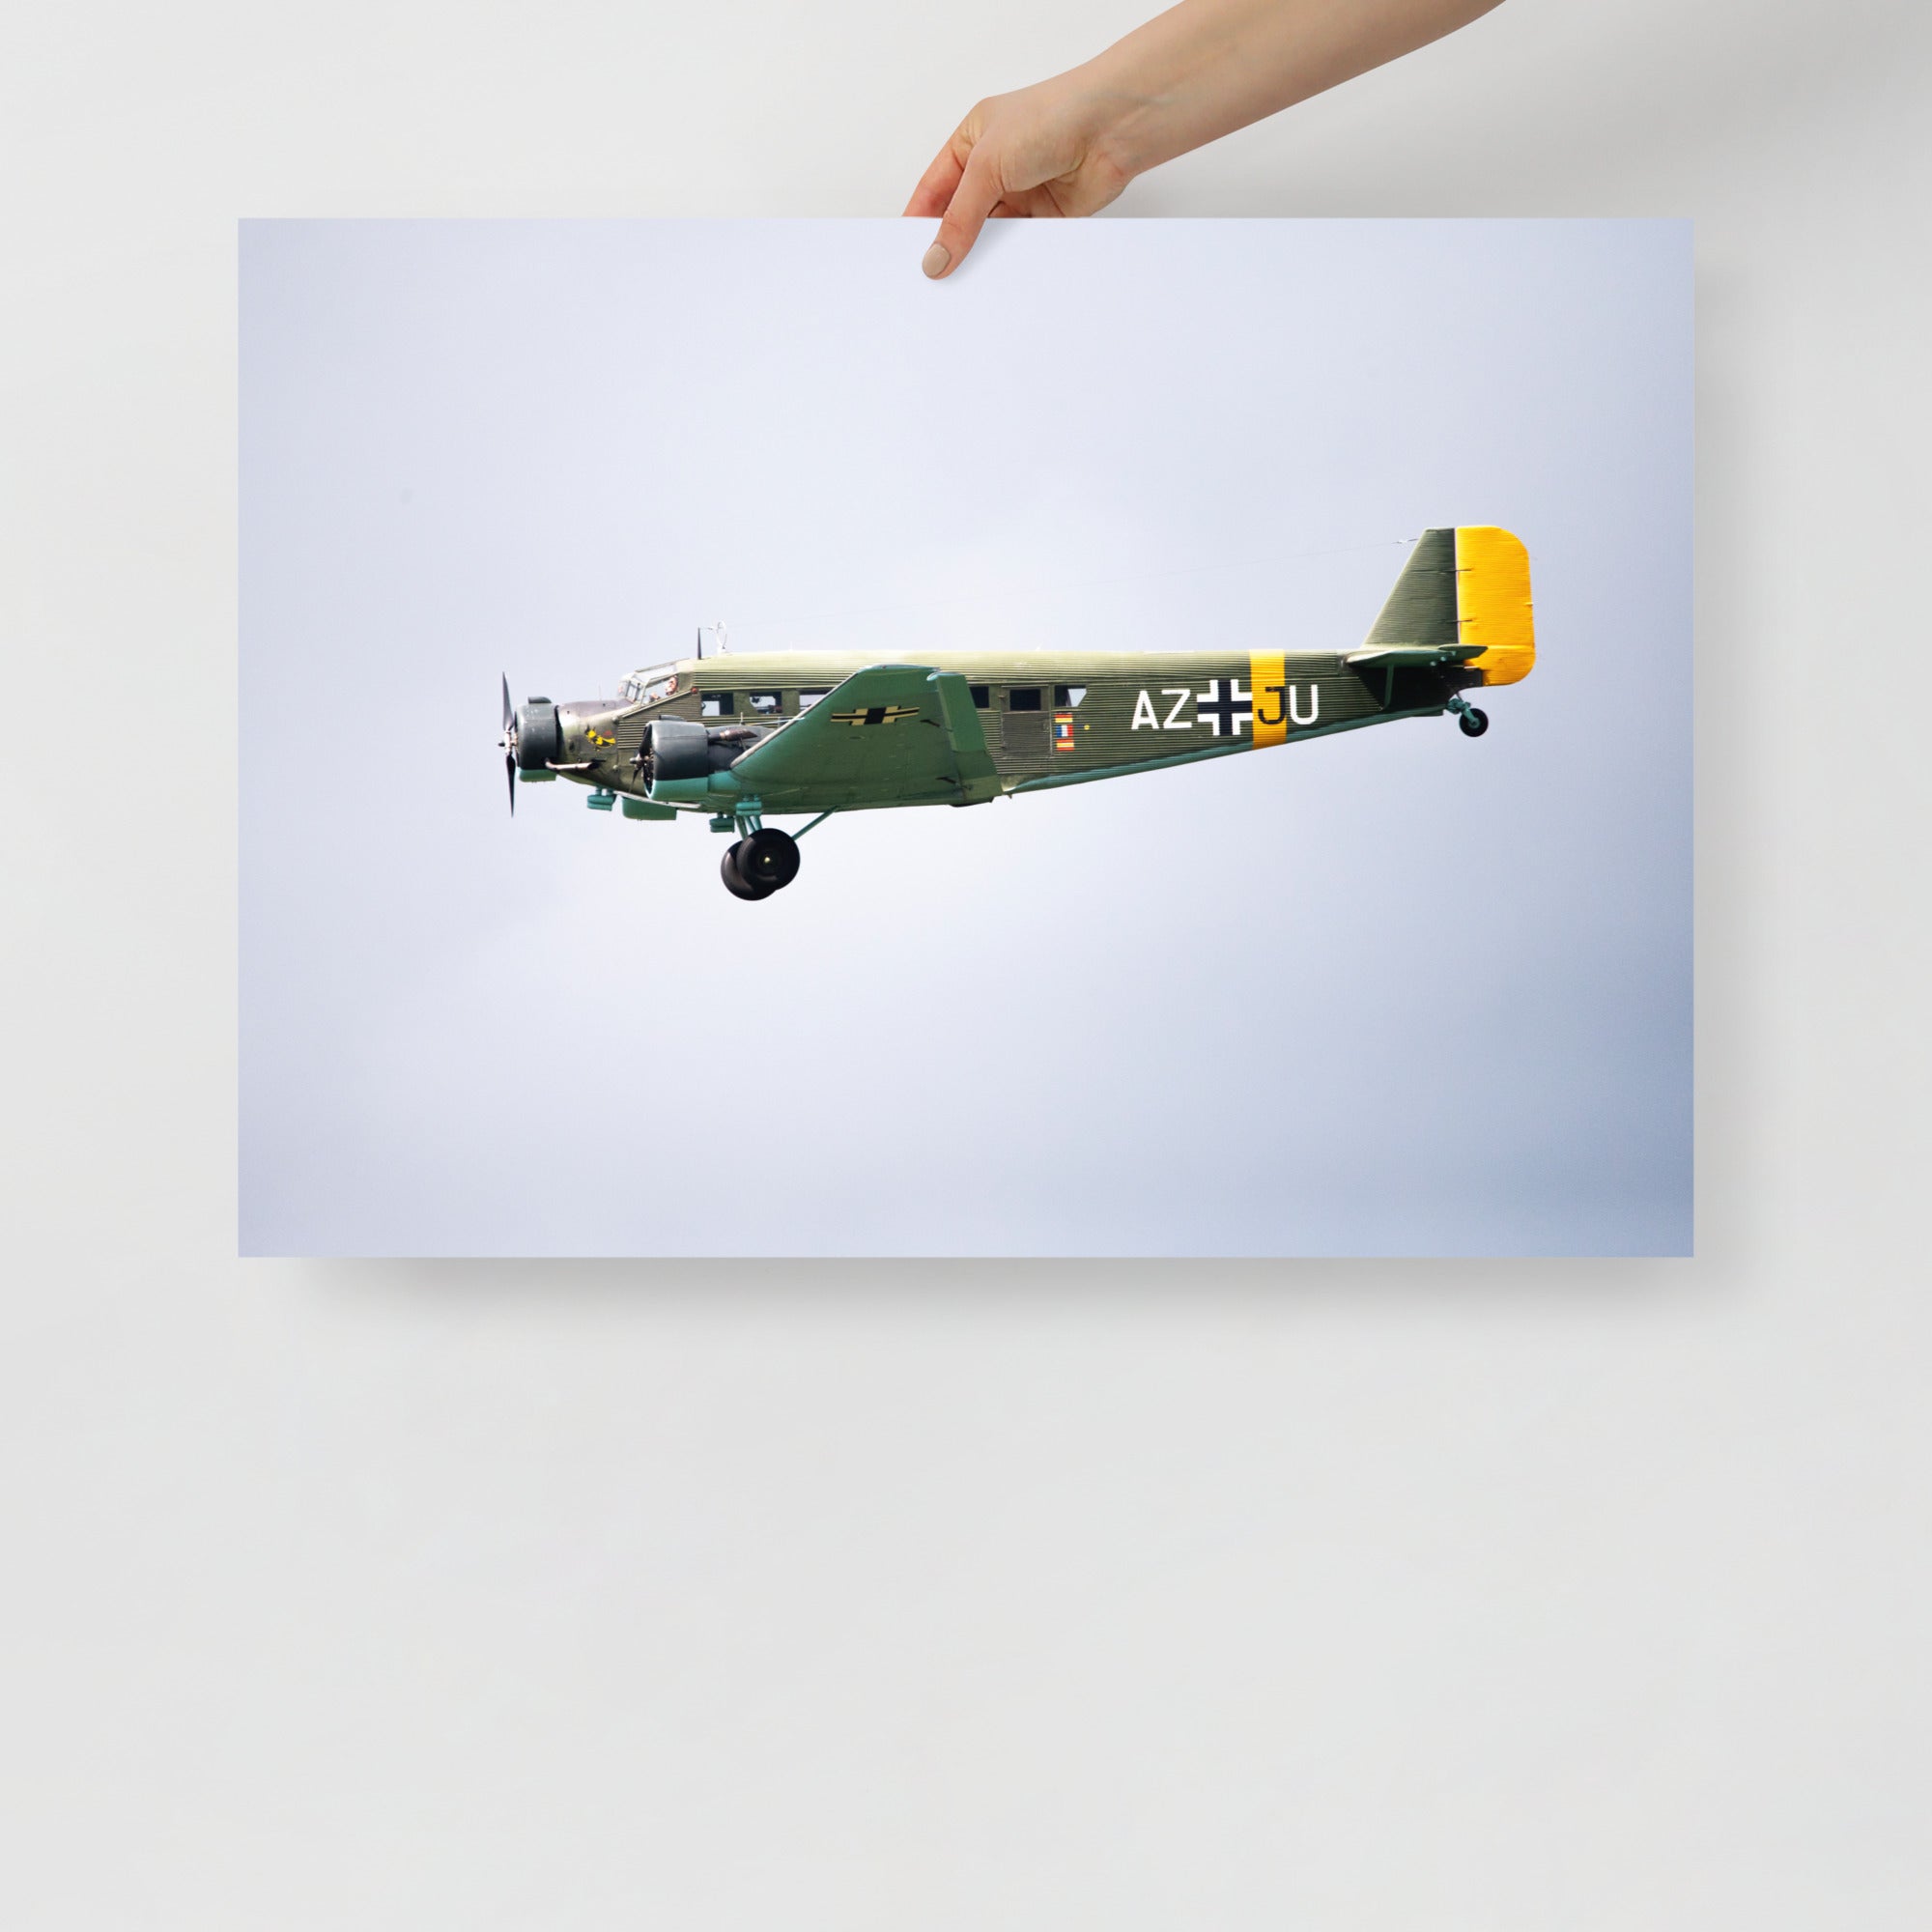 Poster mural - Avion Junkers Ju 52 – Photographie d'avion – Poster photo, poster XXL, Photo d’art, photographie murale et des posters muraux des photographies de rue unique au monde. La boutique de posters créée par un Photographe français.